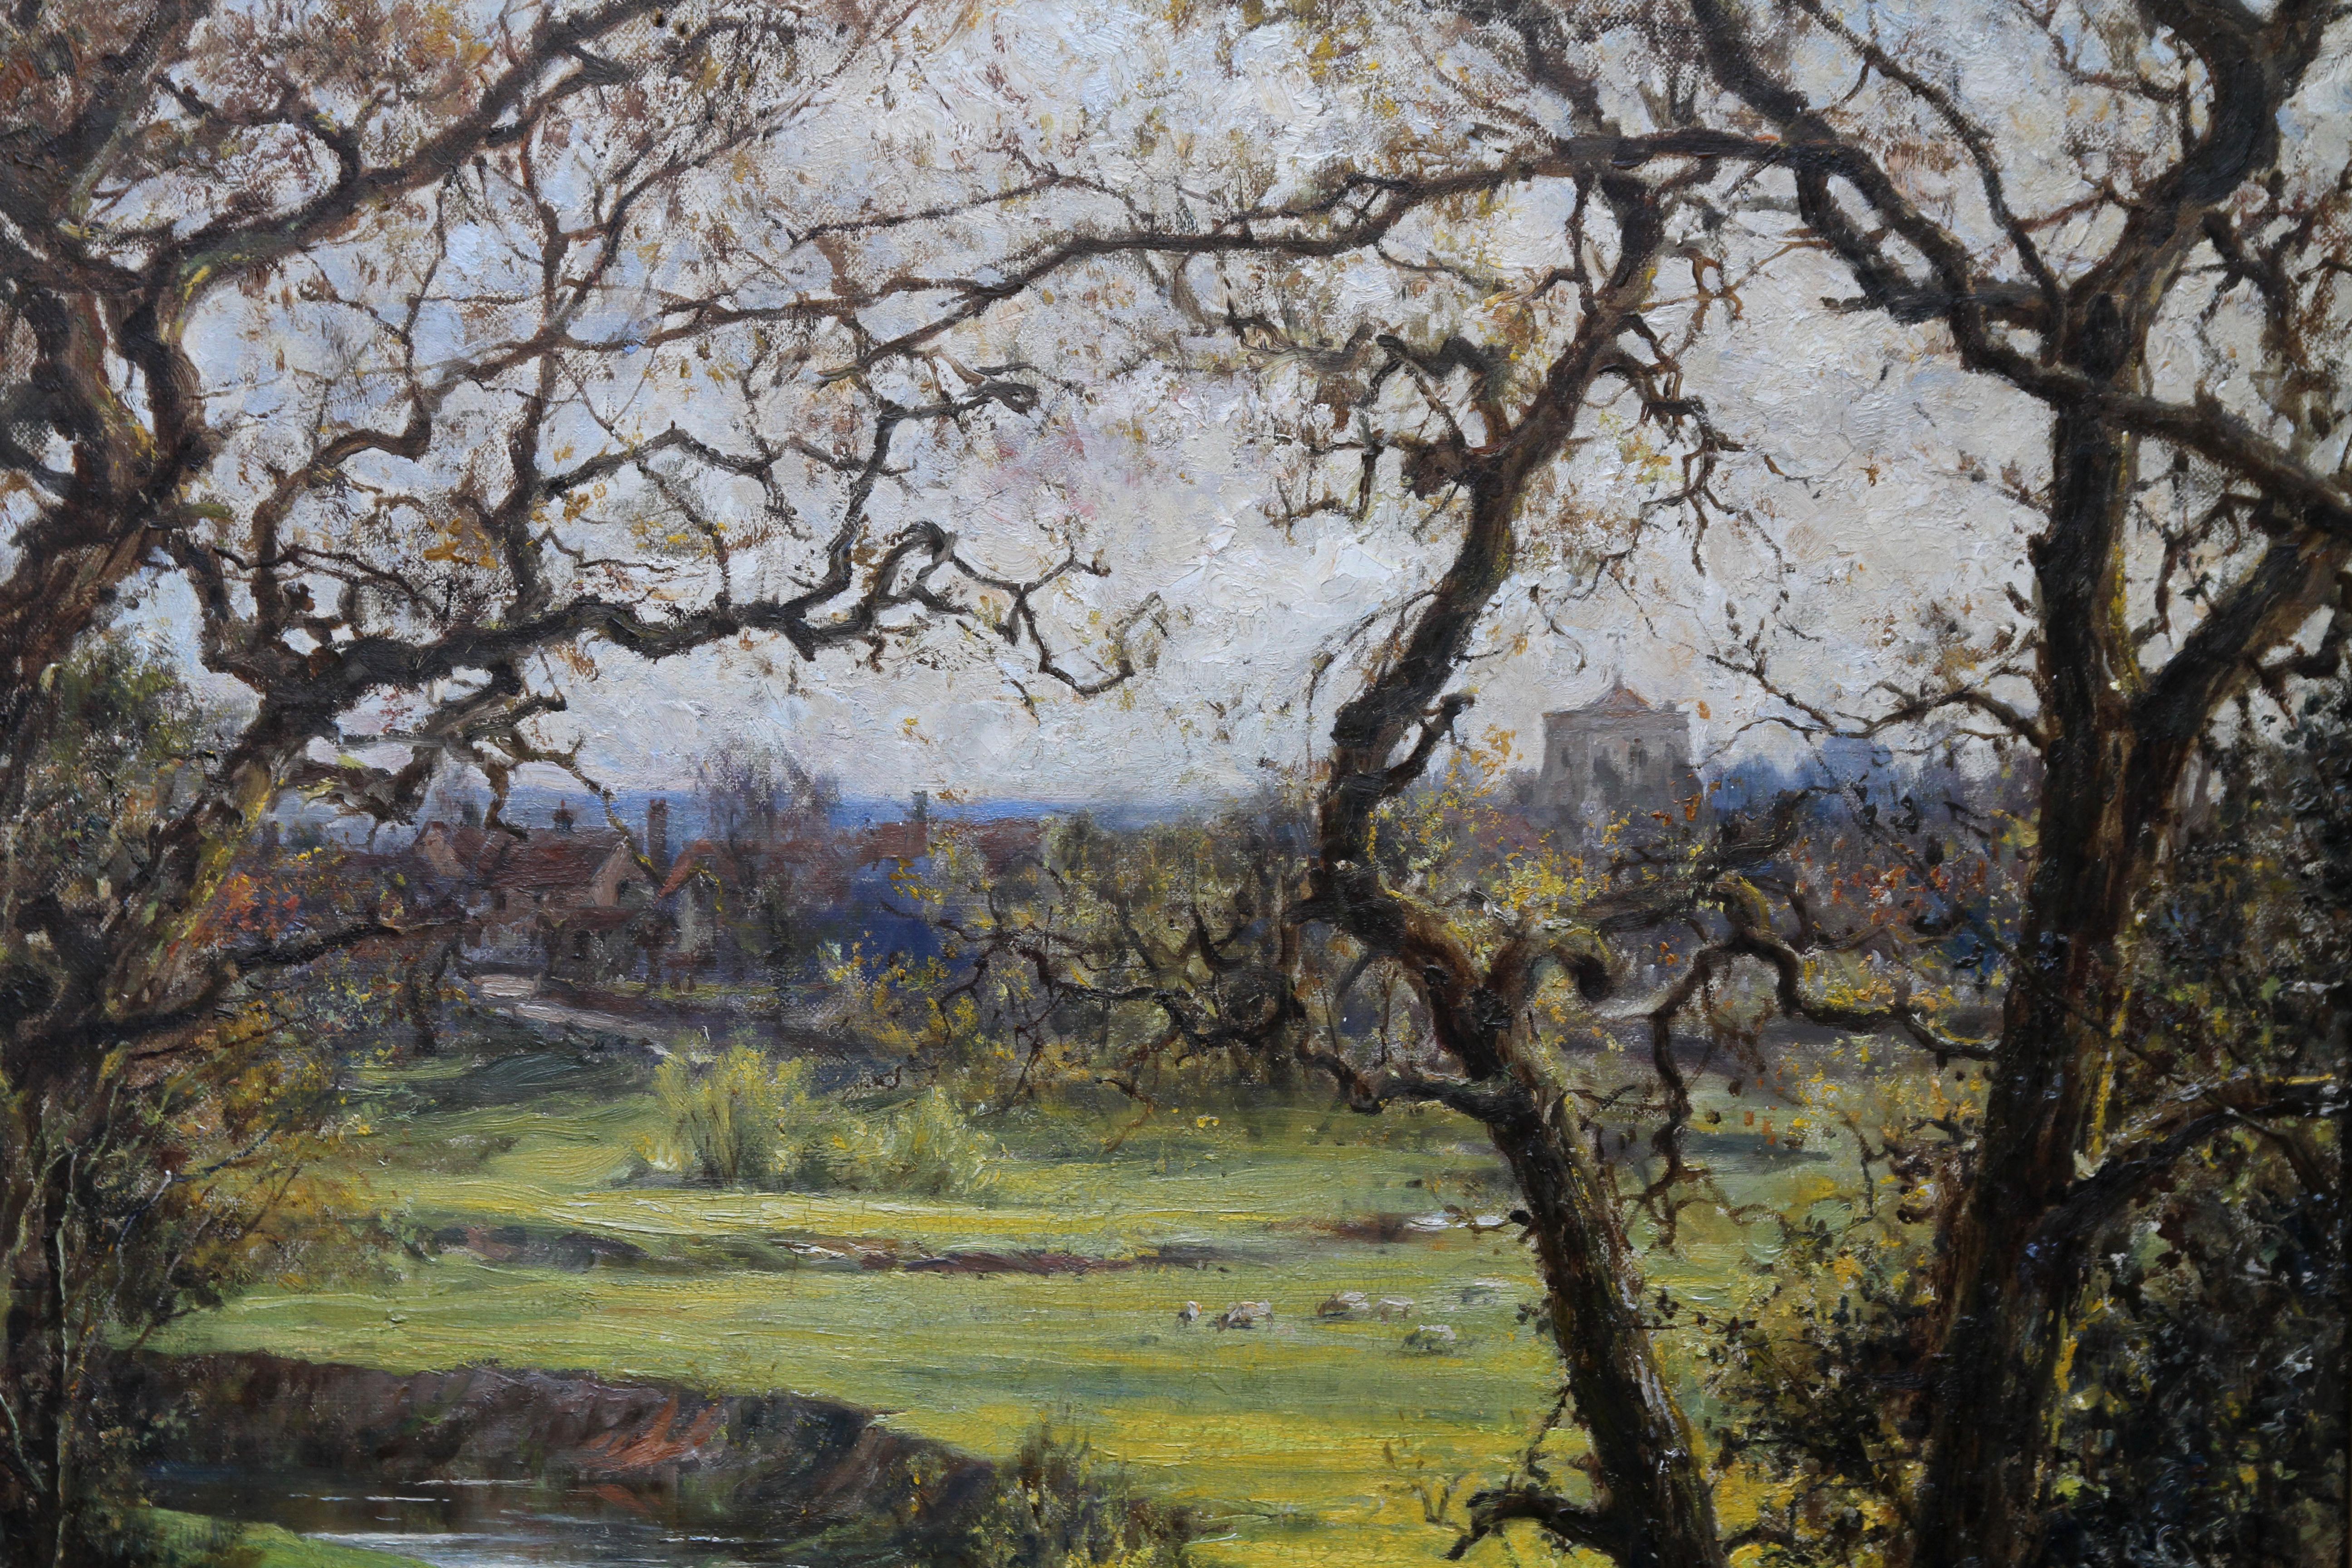 Très belle peinture à l'huile impressionniste britannique de Robert Morley.  La peinture date d'environ 1911 et a peut-être été réalisée près de Frensham, dans le Surrey, où il vivait. On dirait que c'est le printemps, car les jacinthes sont au